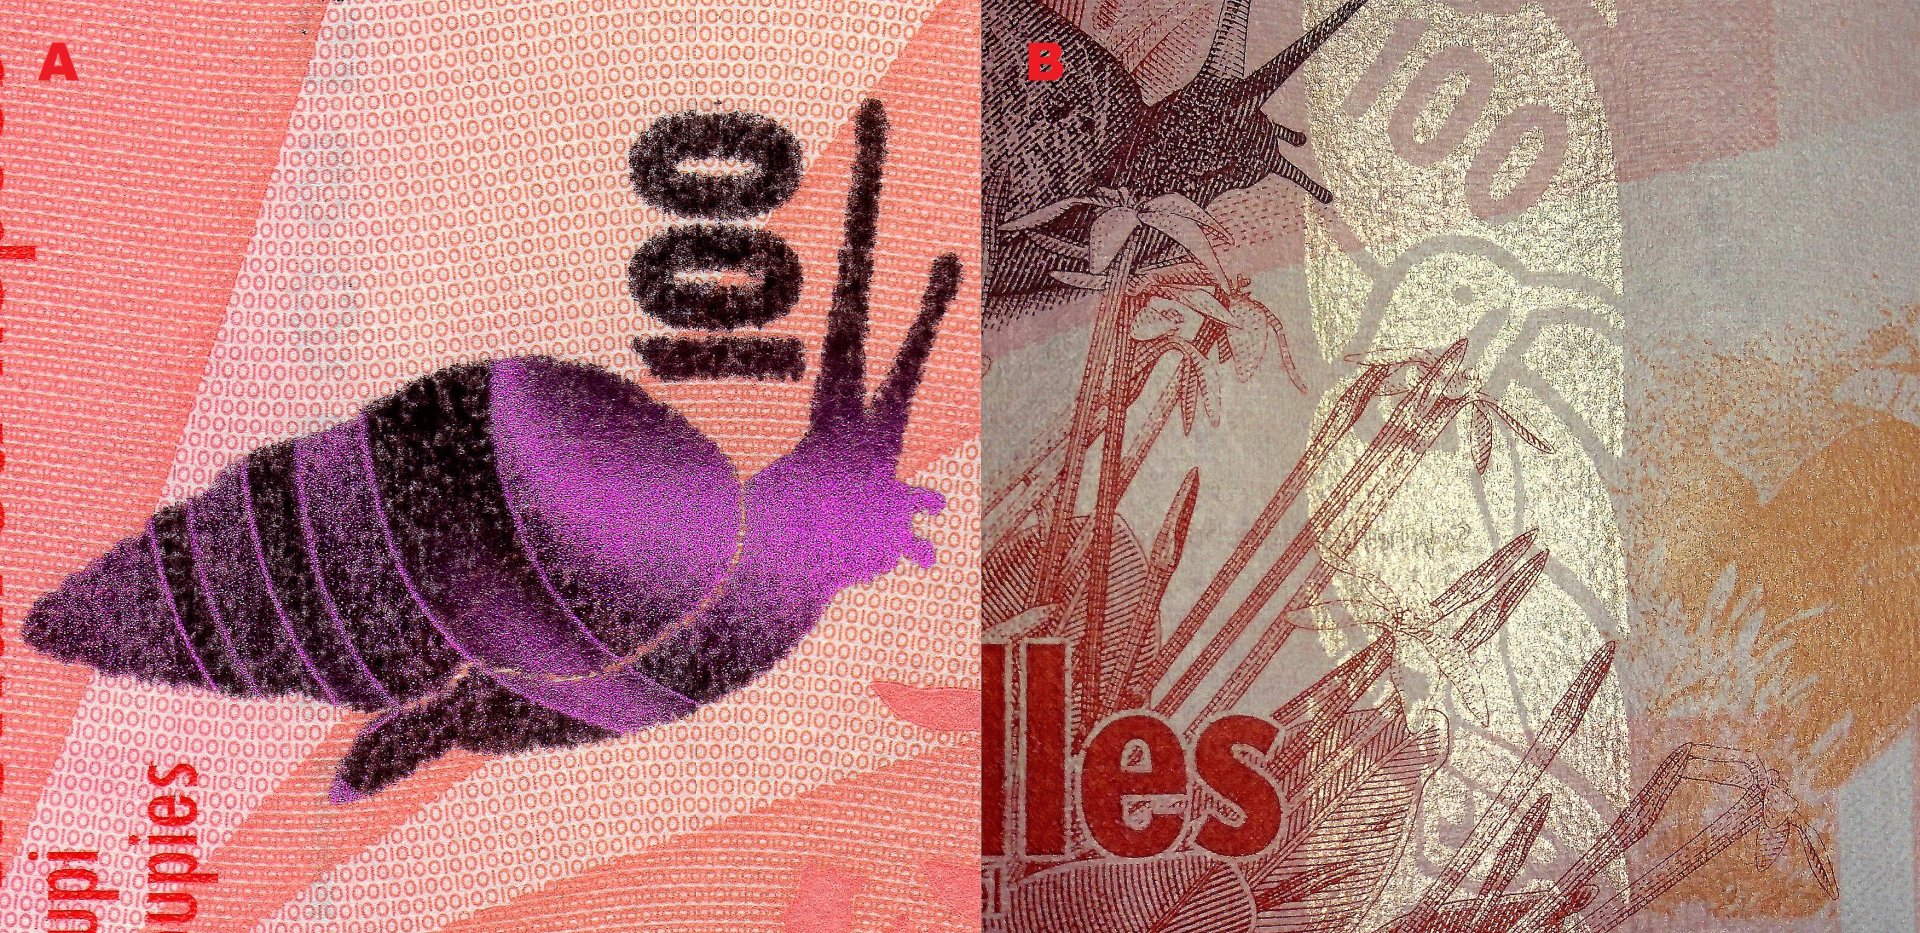 Obr. 7 A) Stylizovaná kresba šneka Rhachistia aldabrae seychelské v levém dolním roku reverzu bankovky P#50 realizovaná v třpytivé metalizaci B) Detail iridiscenčního pruhu s negativním obrazem strdimila a nominální hodnoty „100“.